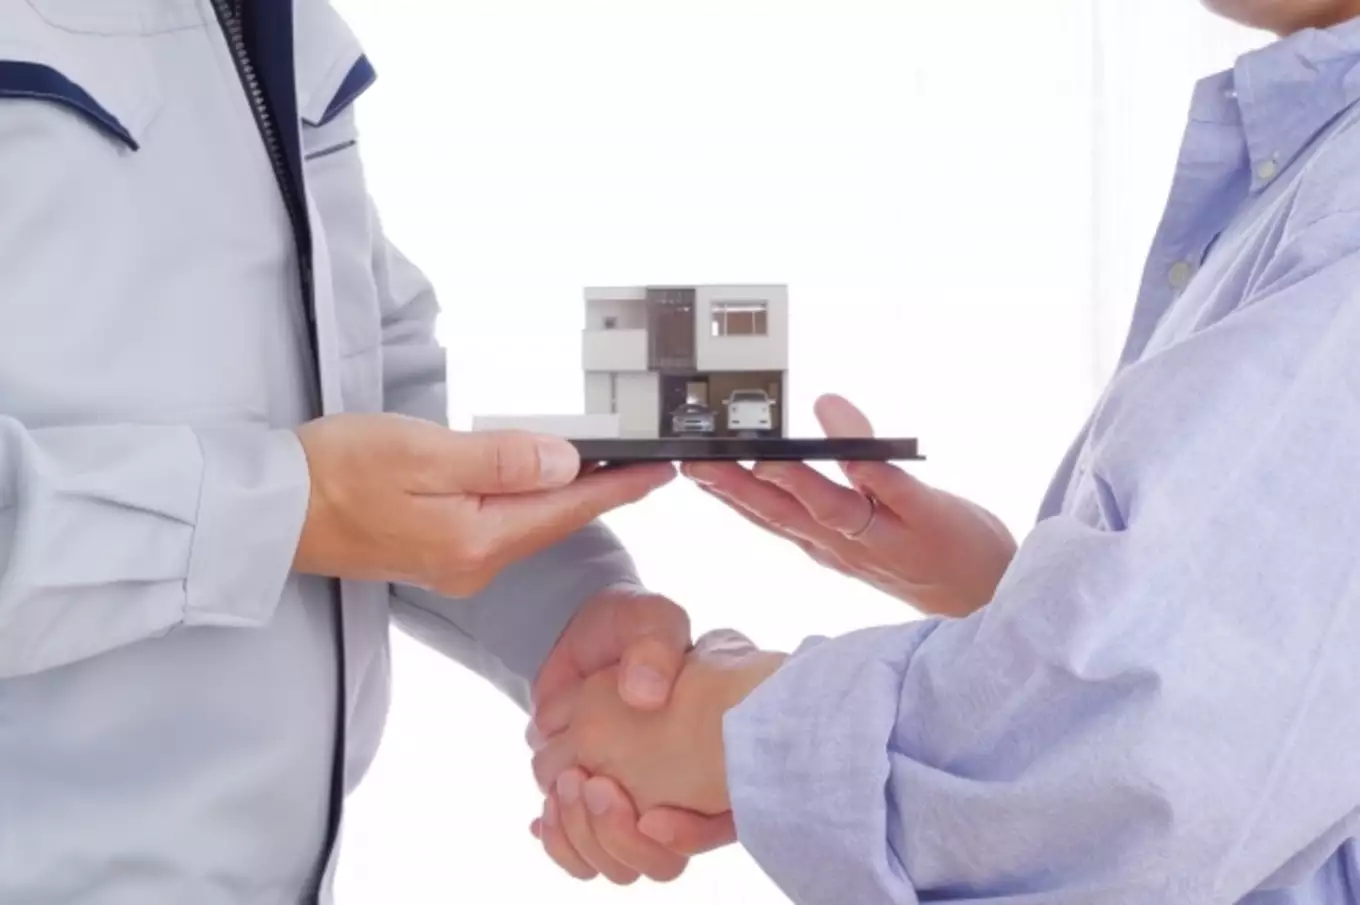 住宅模型、握手する男性2人